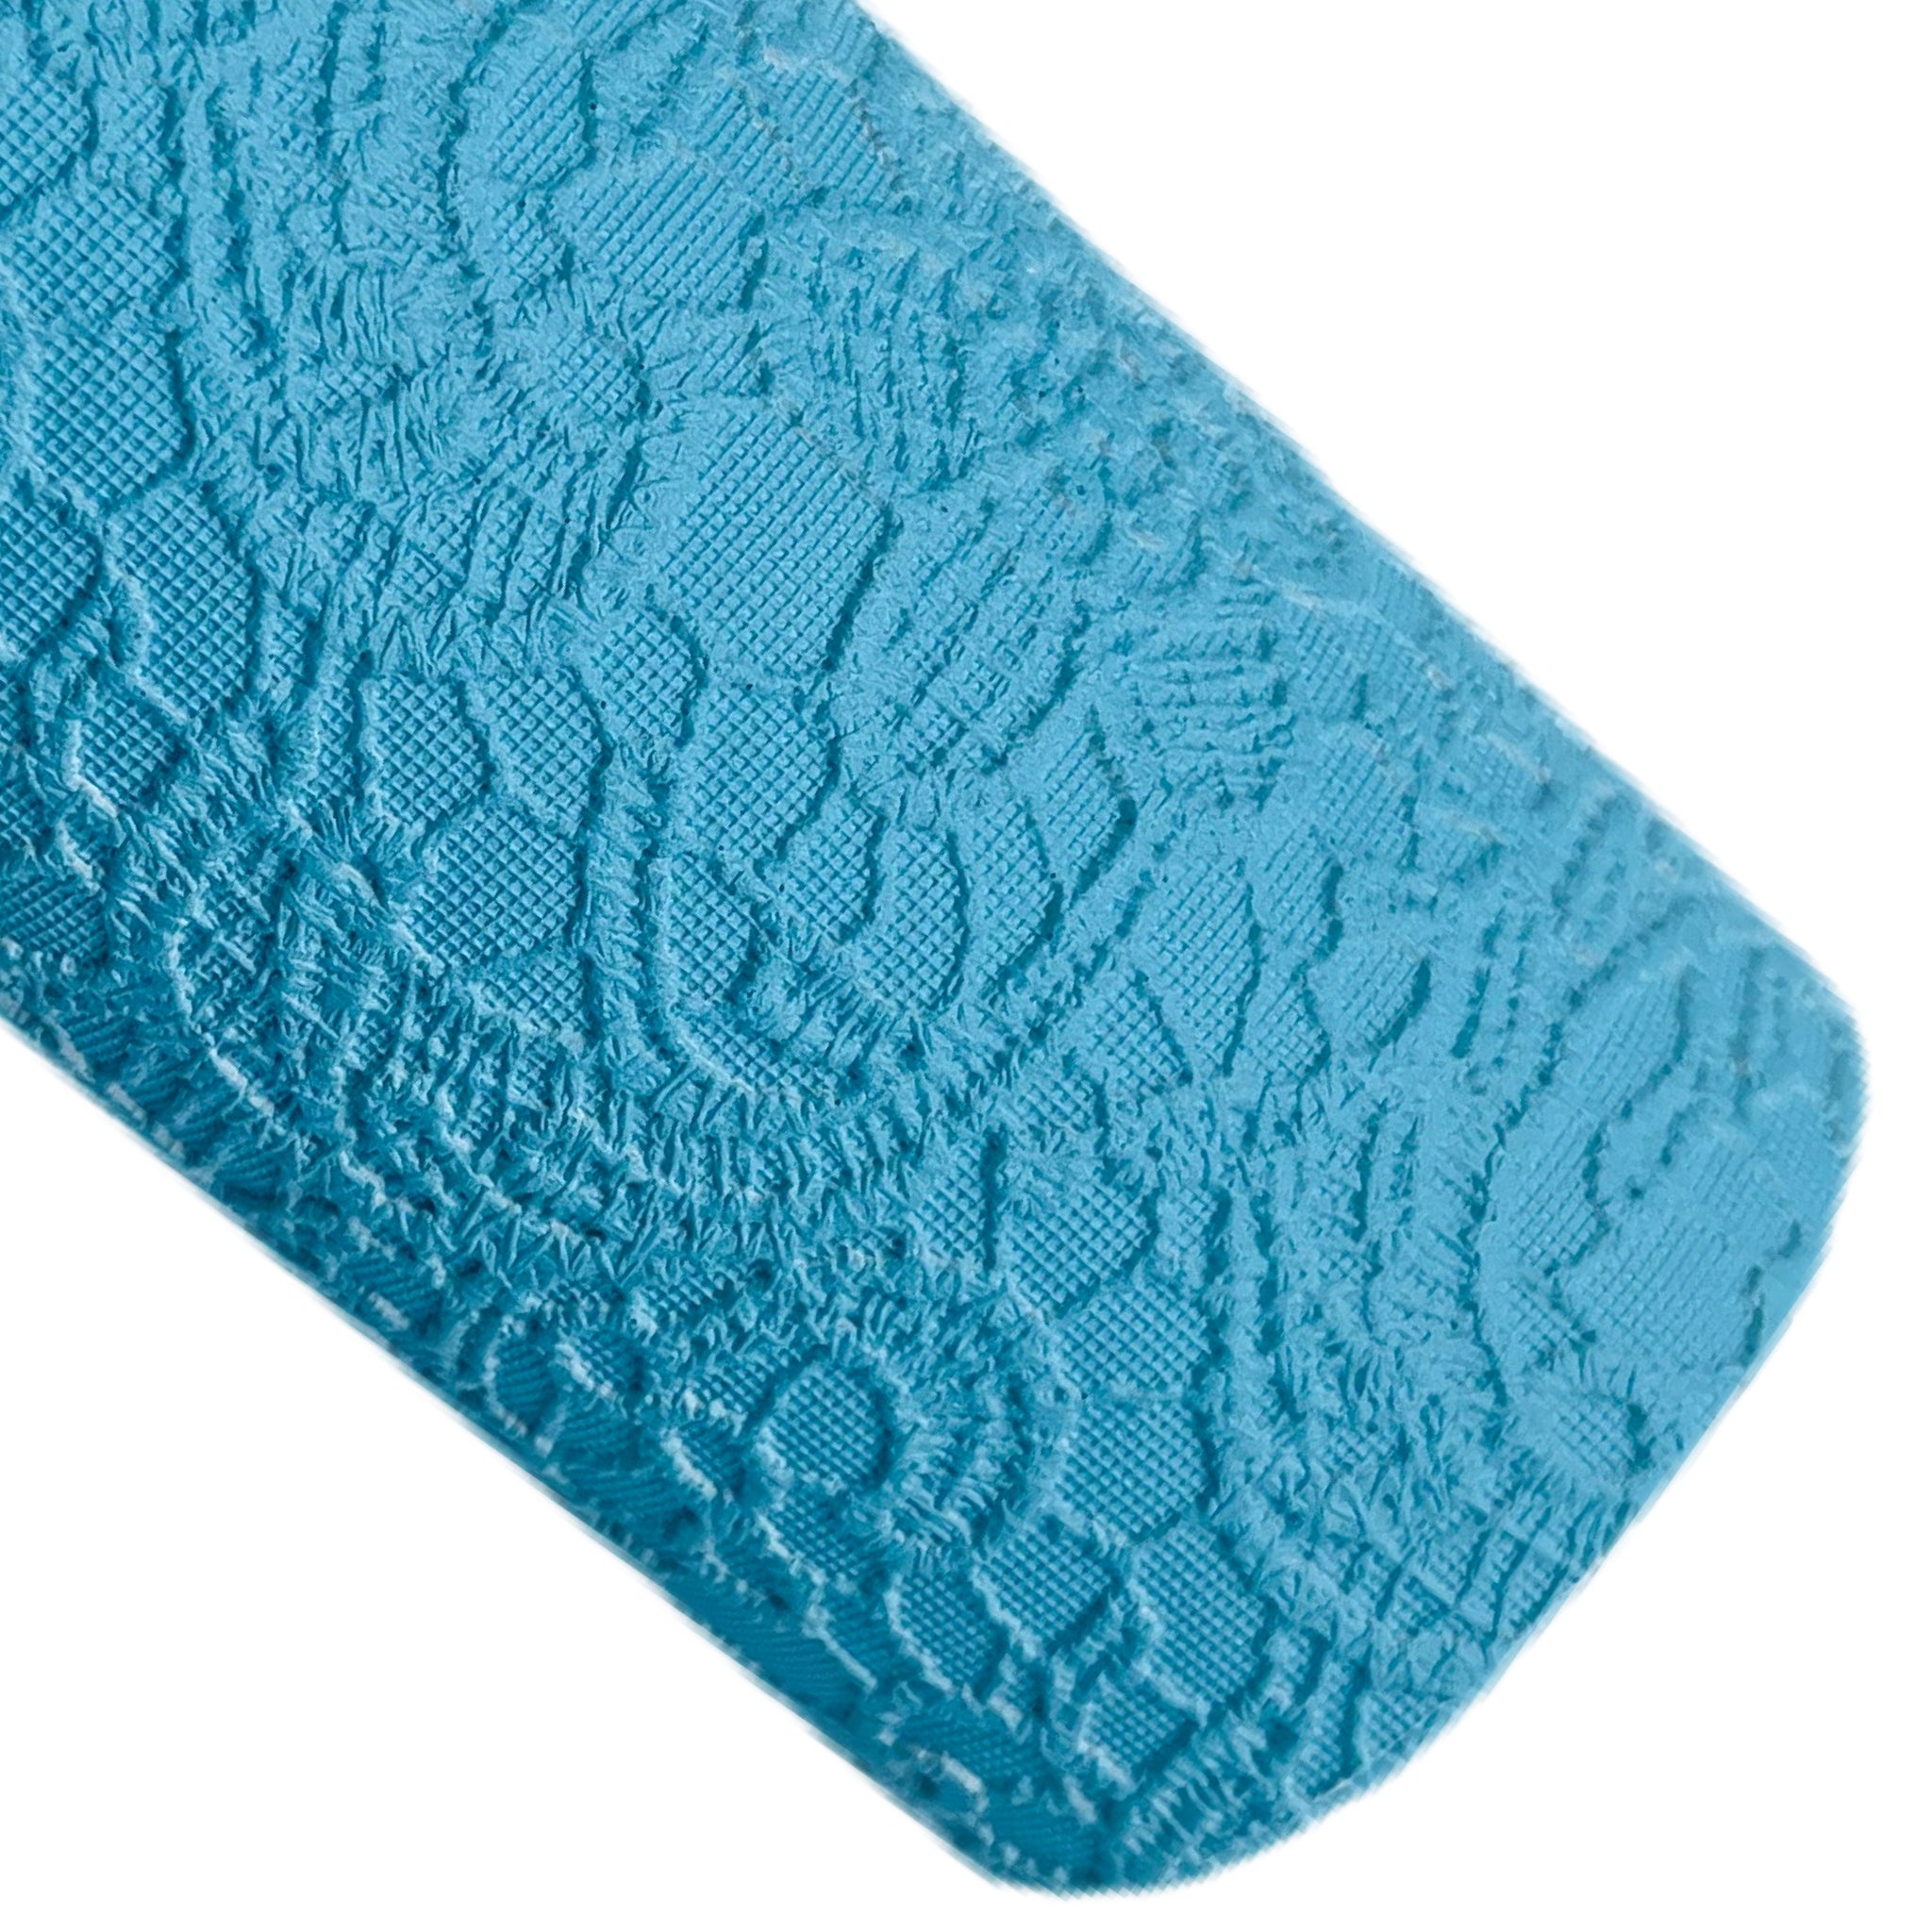 Blue Embossed Appliqué Lace Faux Leather